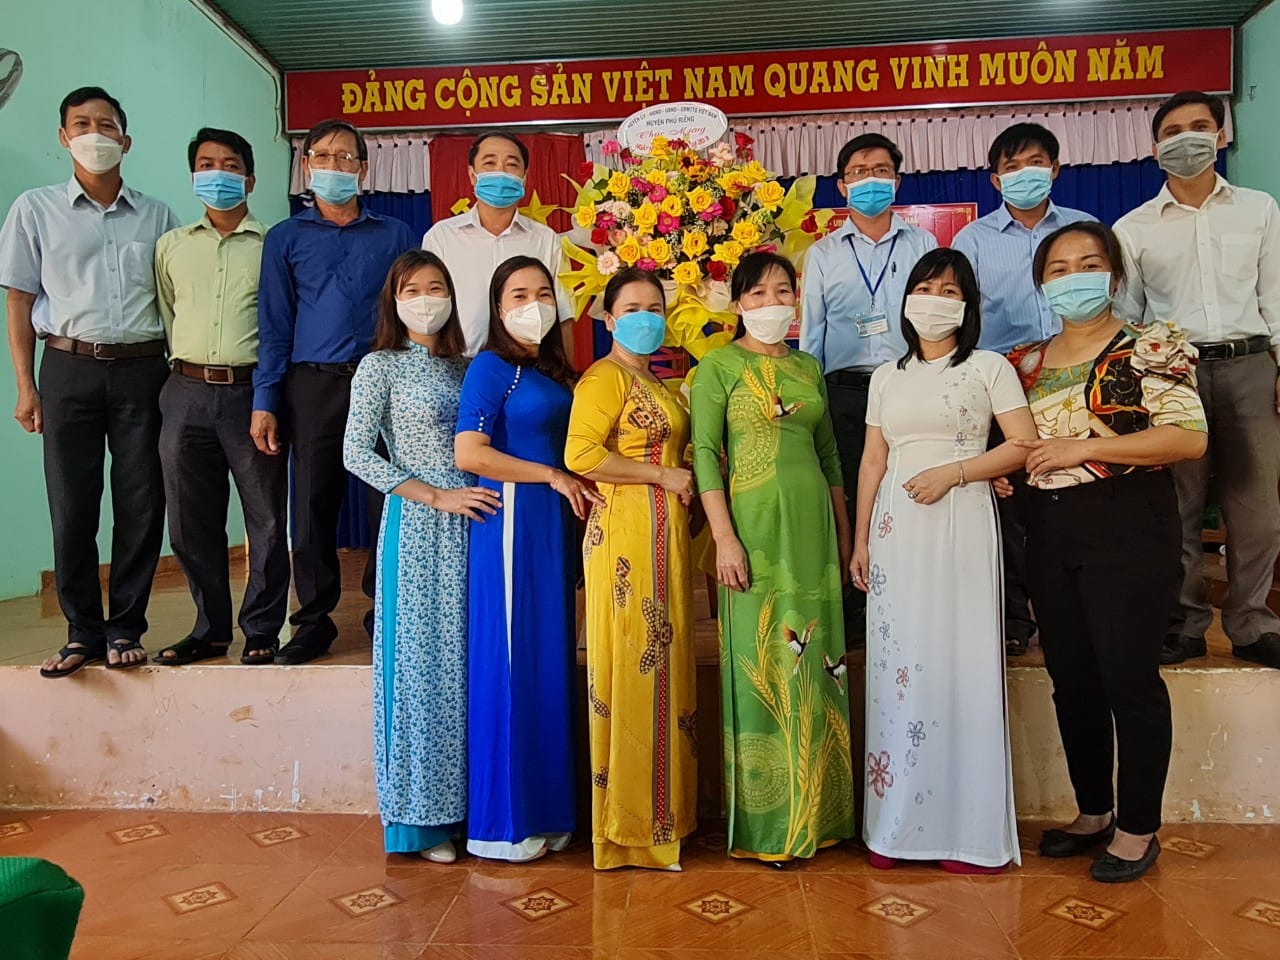 Huyện Phú Riềng tổ chức gặp mặt cán bộ quản lý Ngành Giáo dục nhân ngày 20-11.